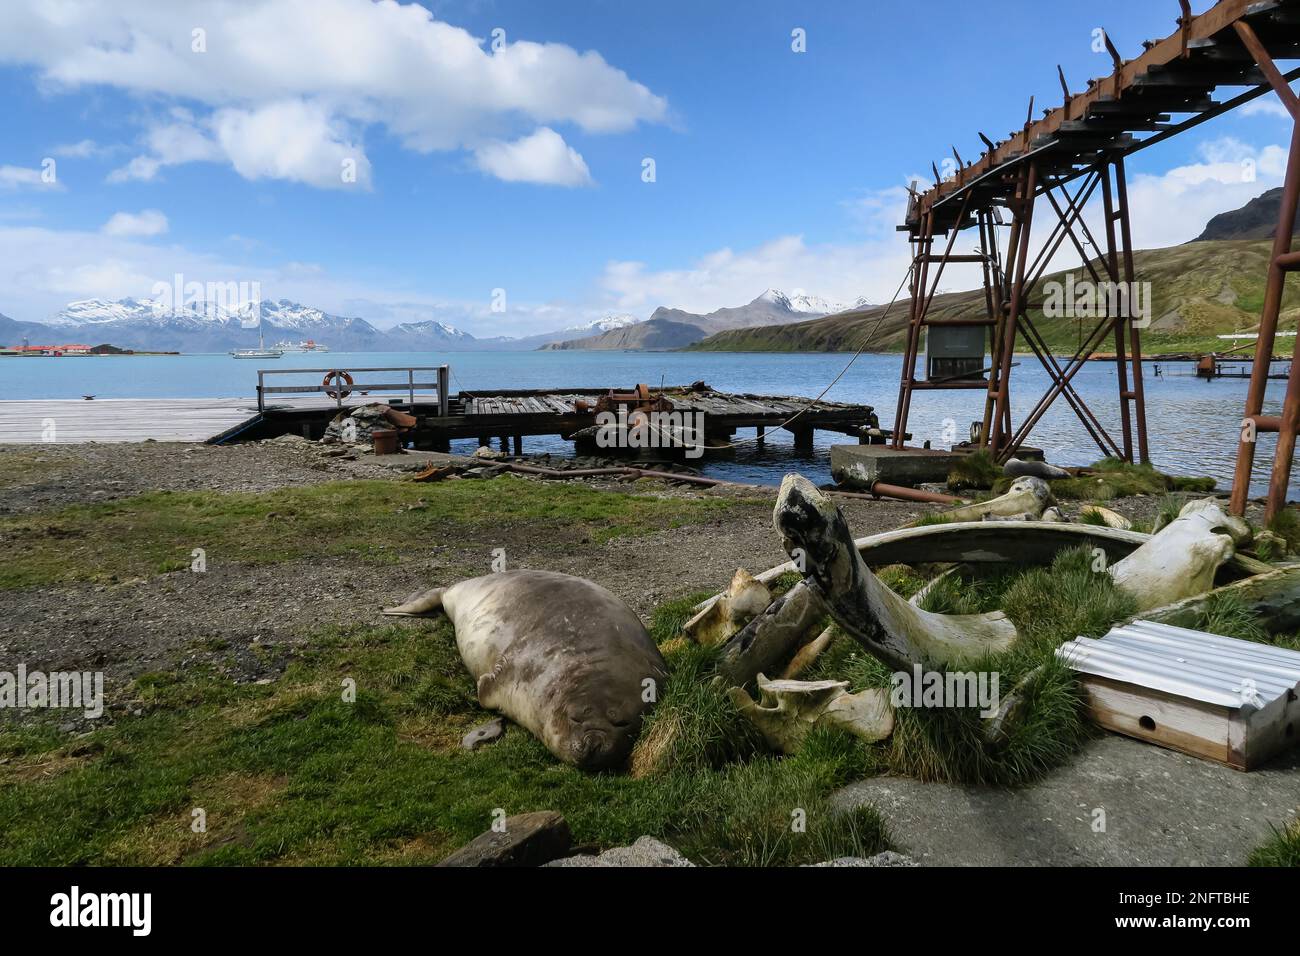 La colonie de Grytviken, la ville de chasse à la baleine de Géorgie du Sud, dans l'Atlantique Sud Banque D'Images